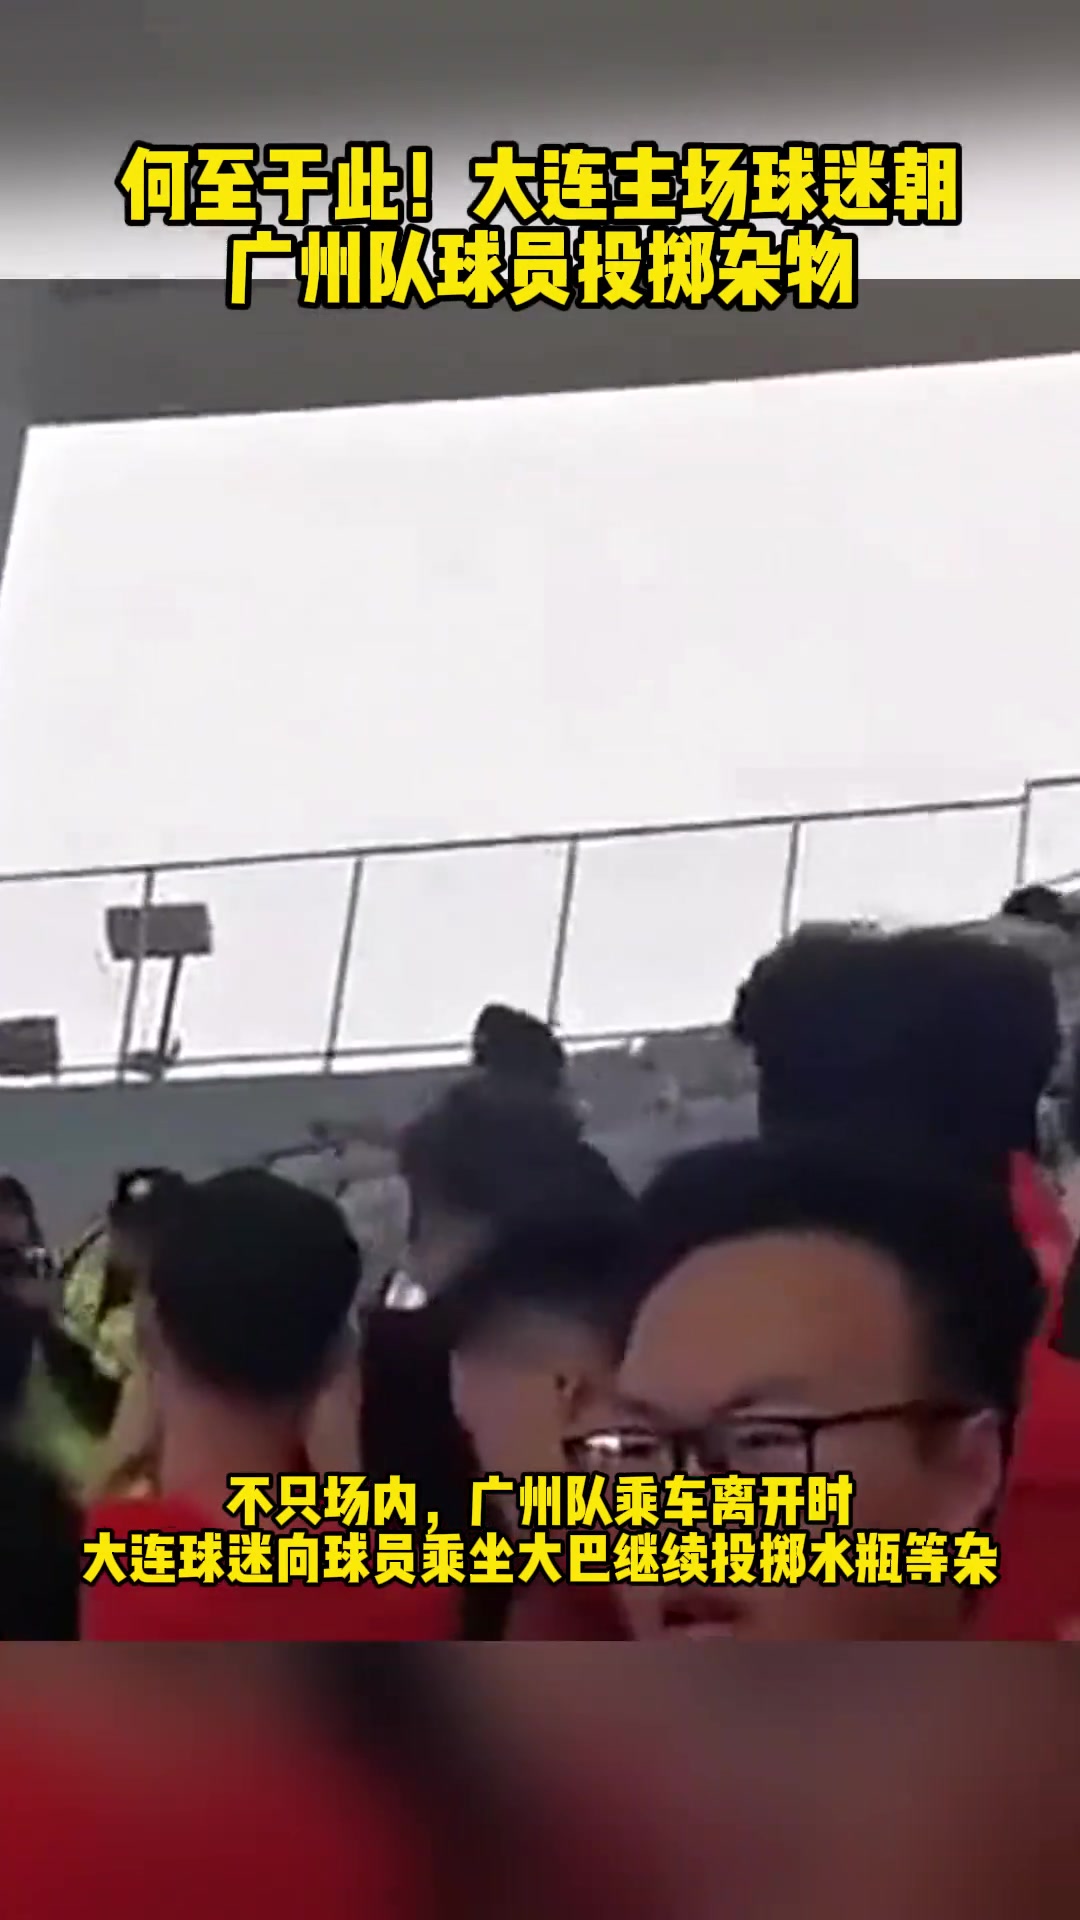 大连球迷场内场外都在对广州队投掷杂物